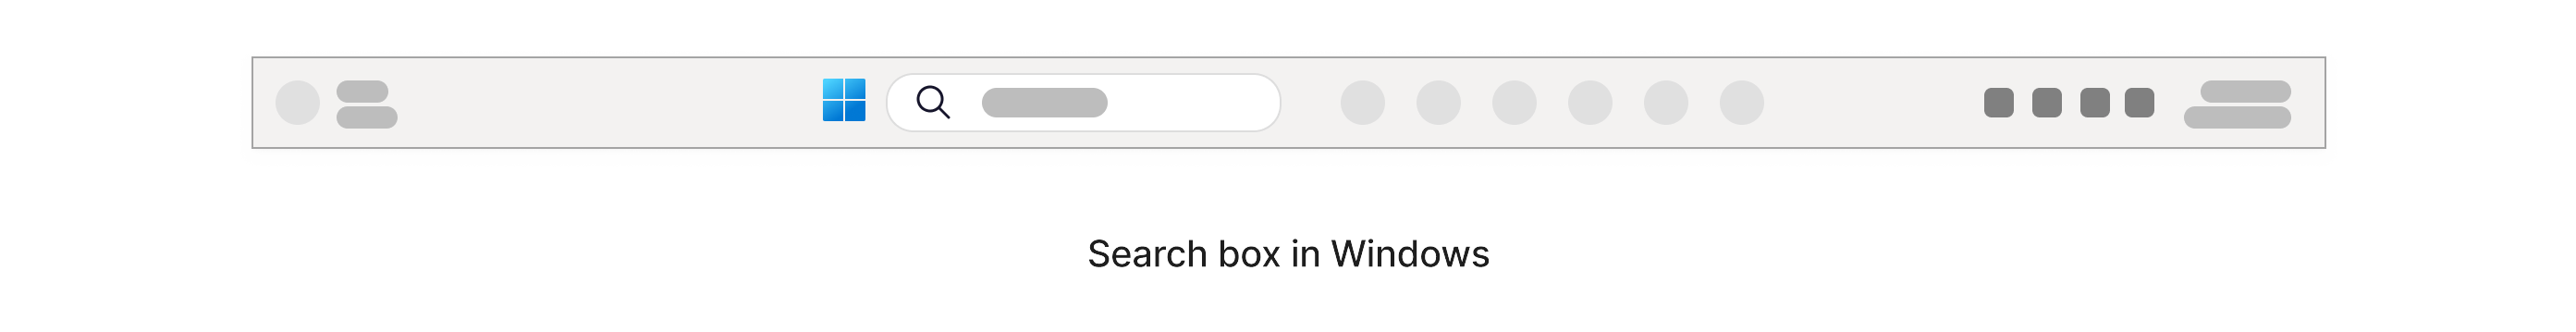 กล่องค้นหาที่มีไอคอนแว่นขยายอยู่ภายในแถบงาน Windows ที่ด้านล่างของหน้าจอ